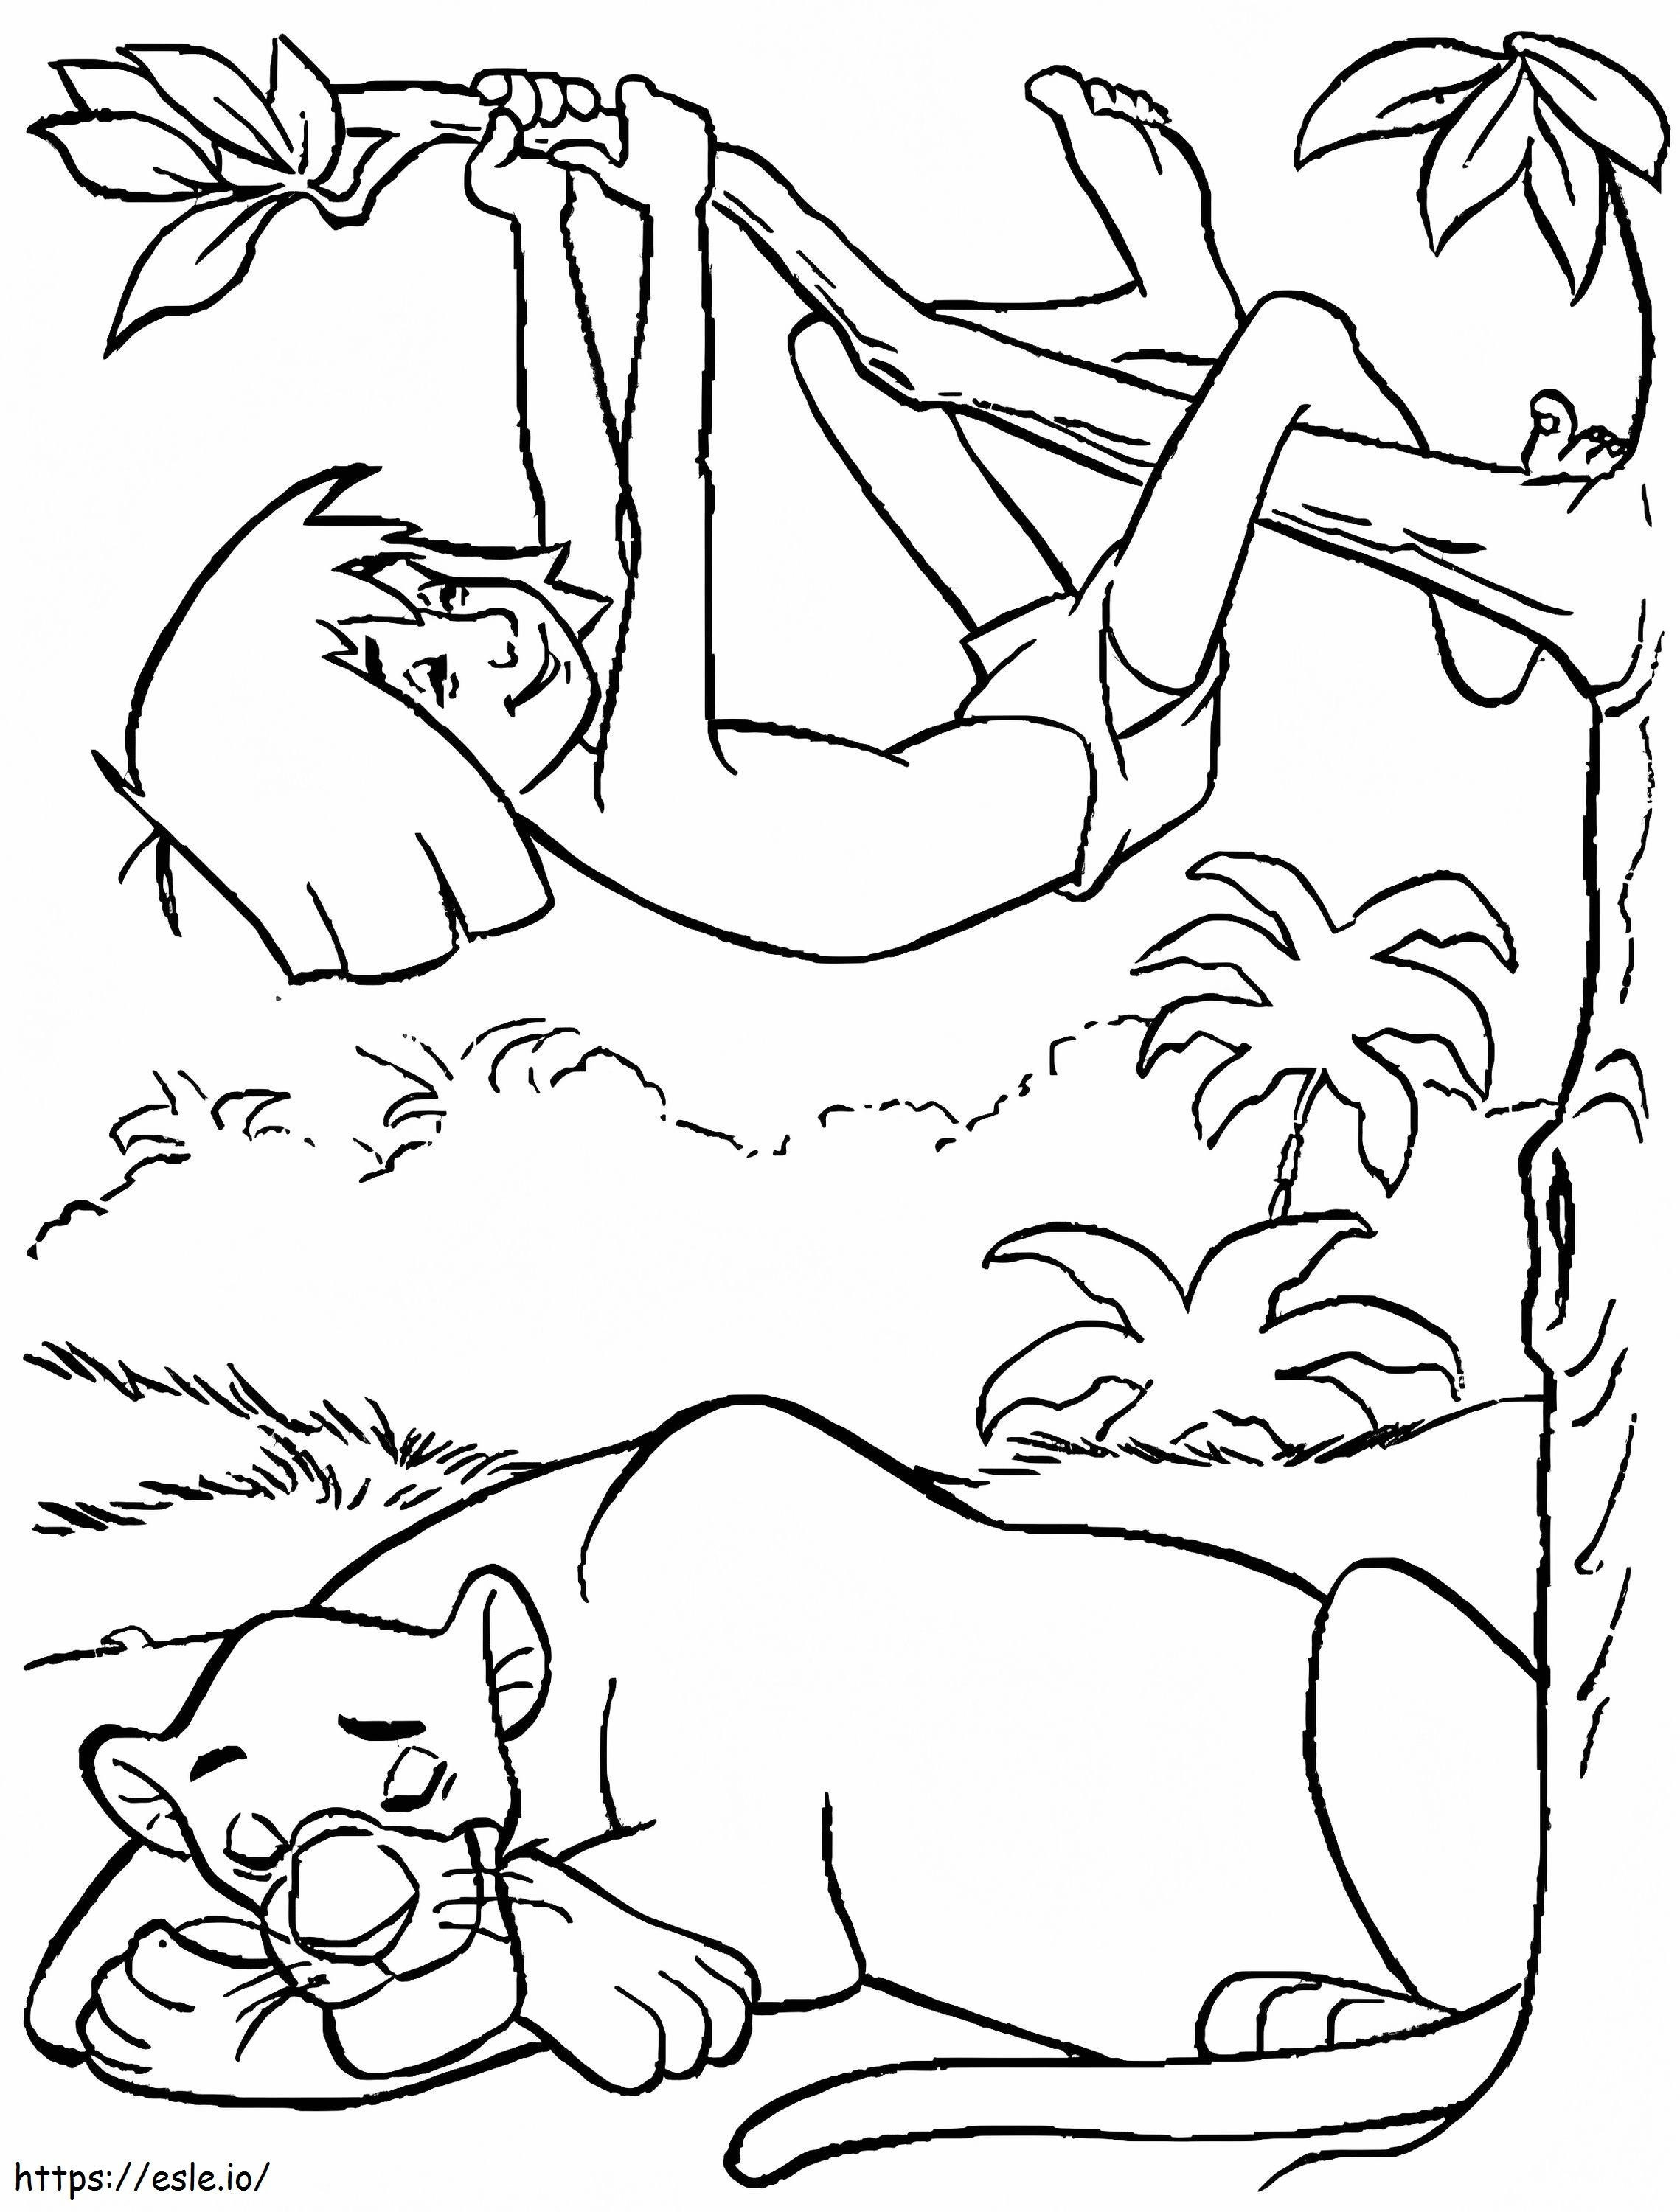 Bagheera Uyuyor ve Mowgli'ye Tırmanıyor boyama